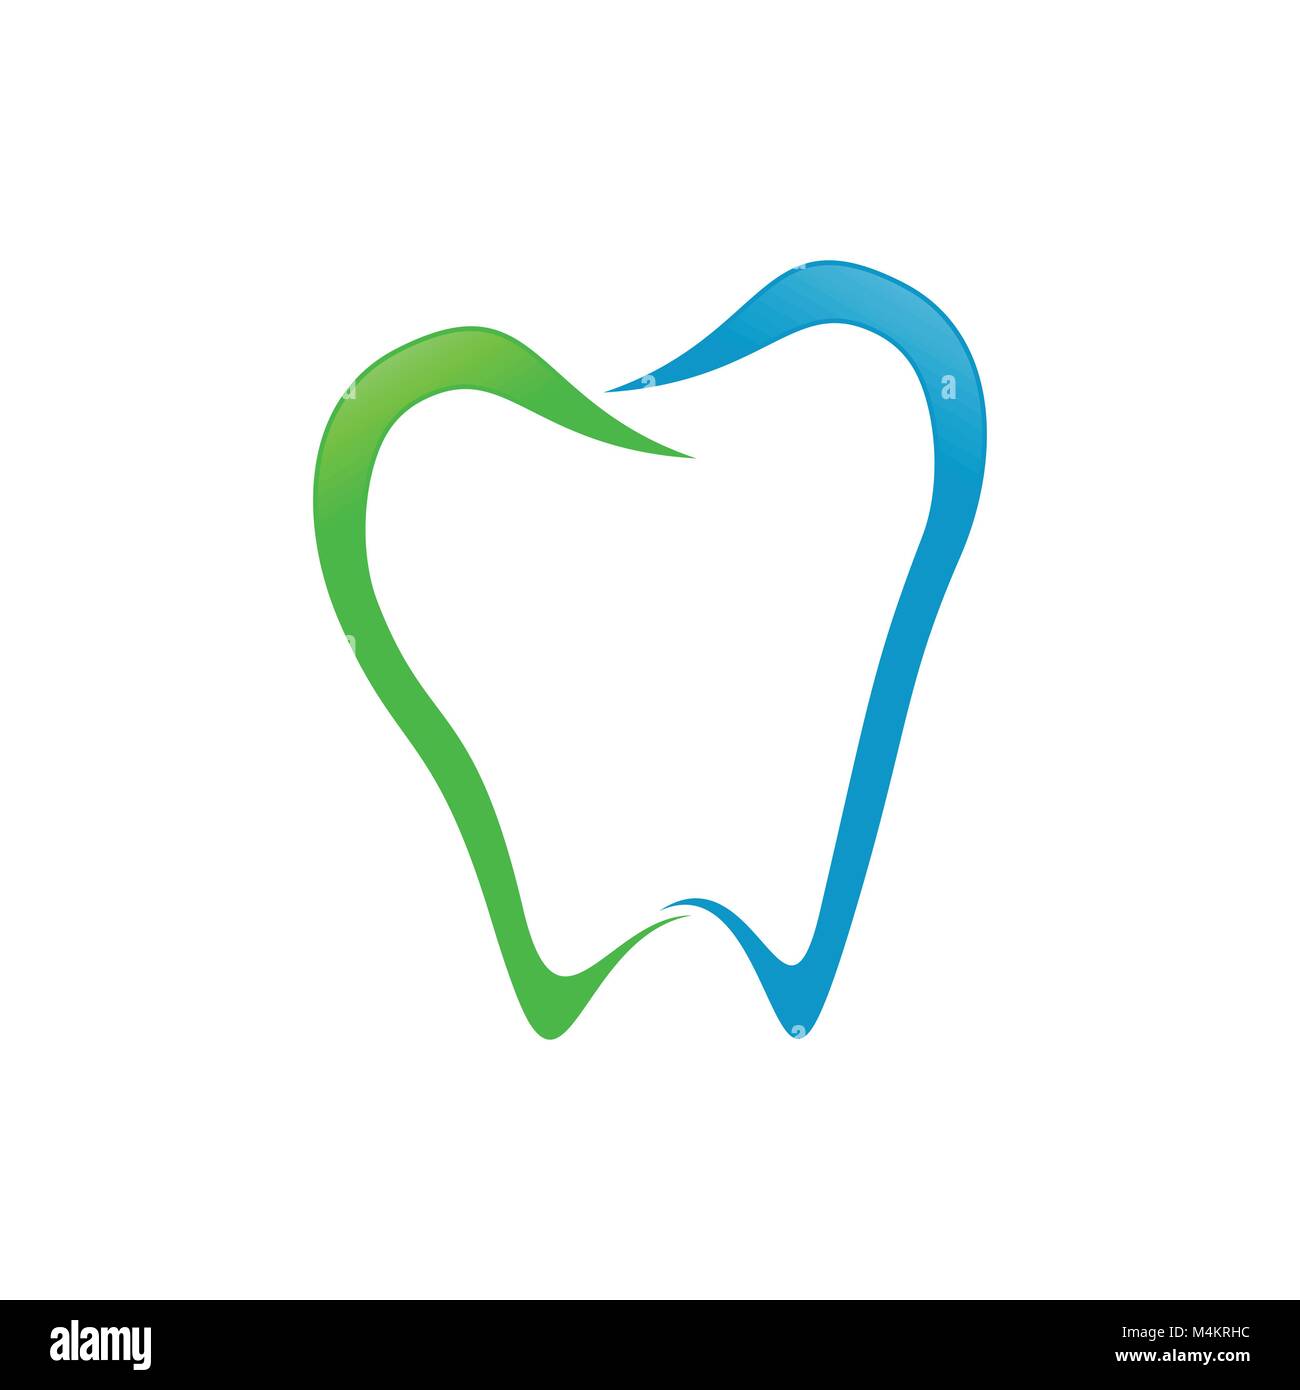 Abstract dente dentale Line Art simbolo Vettore Graphic Logo Design Illustrazione Vettoriale